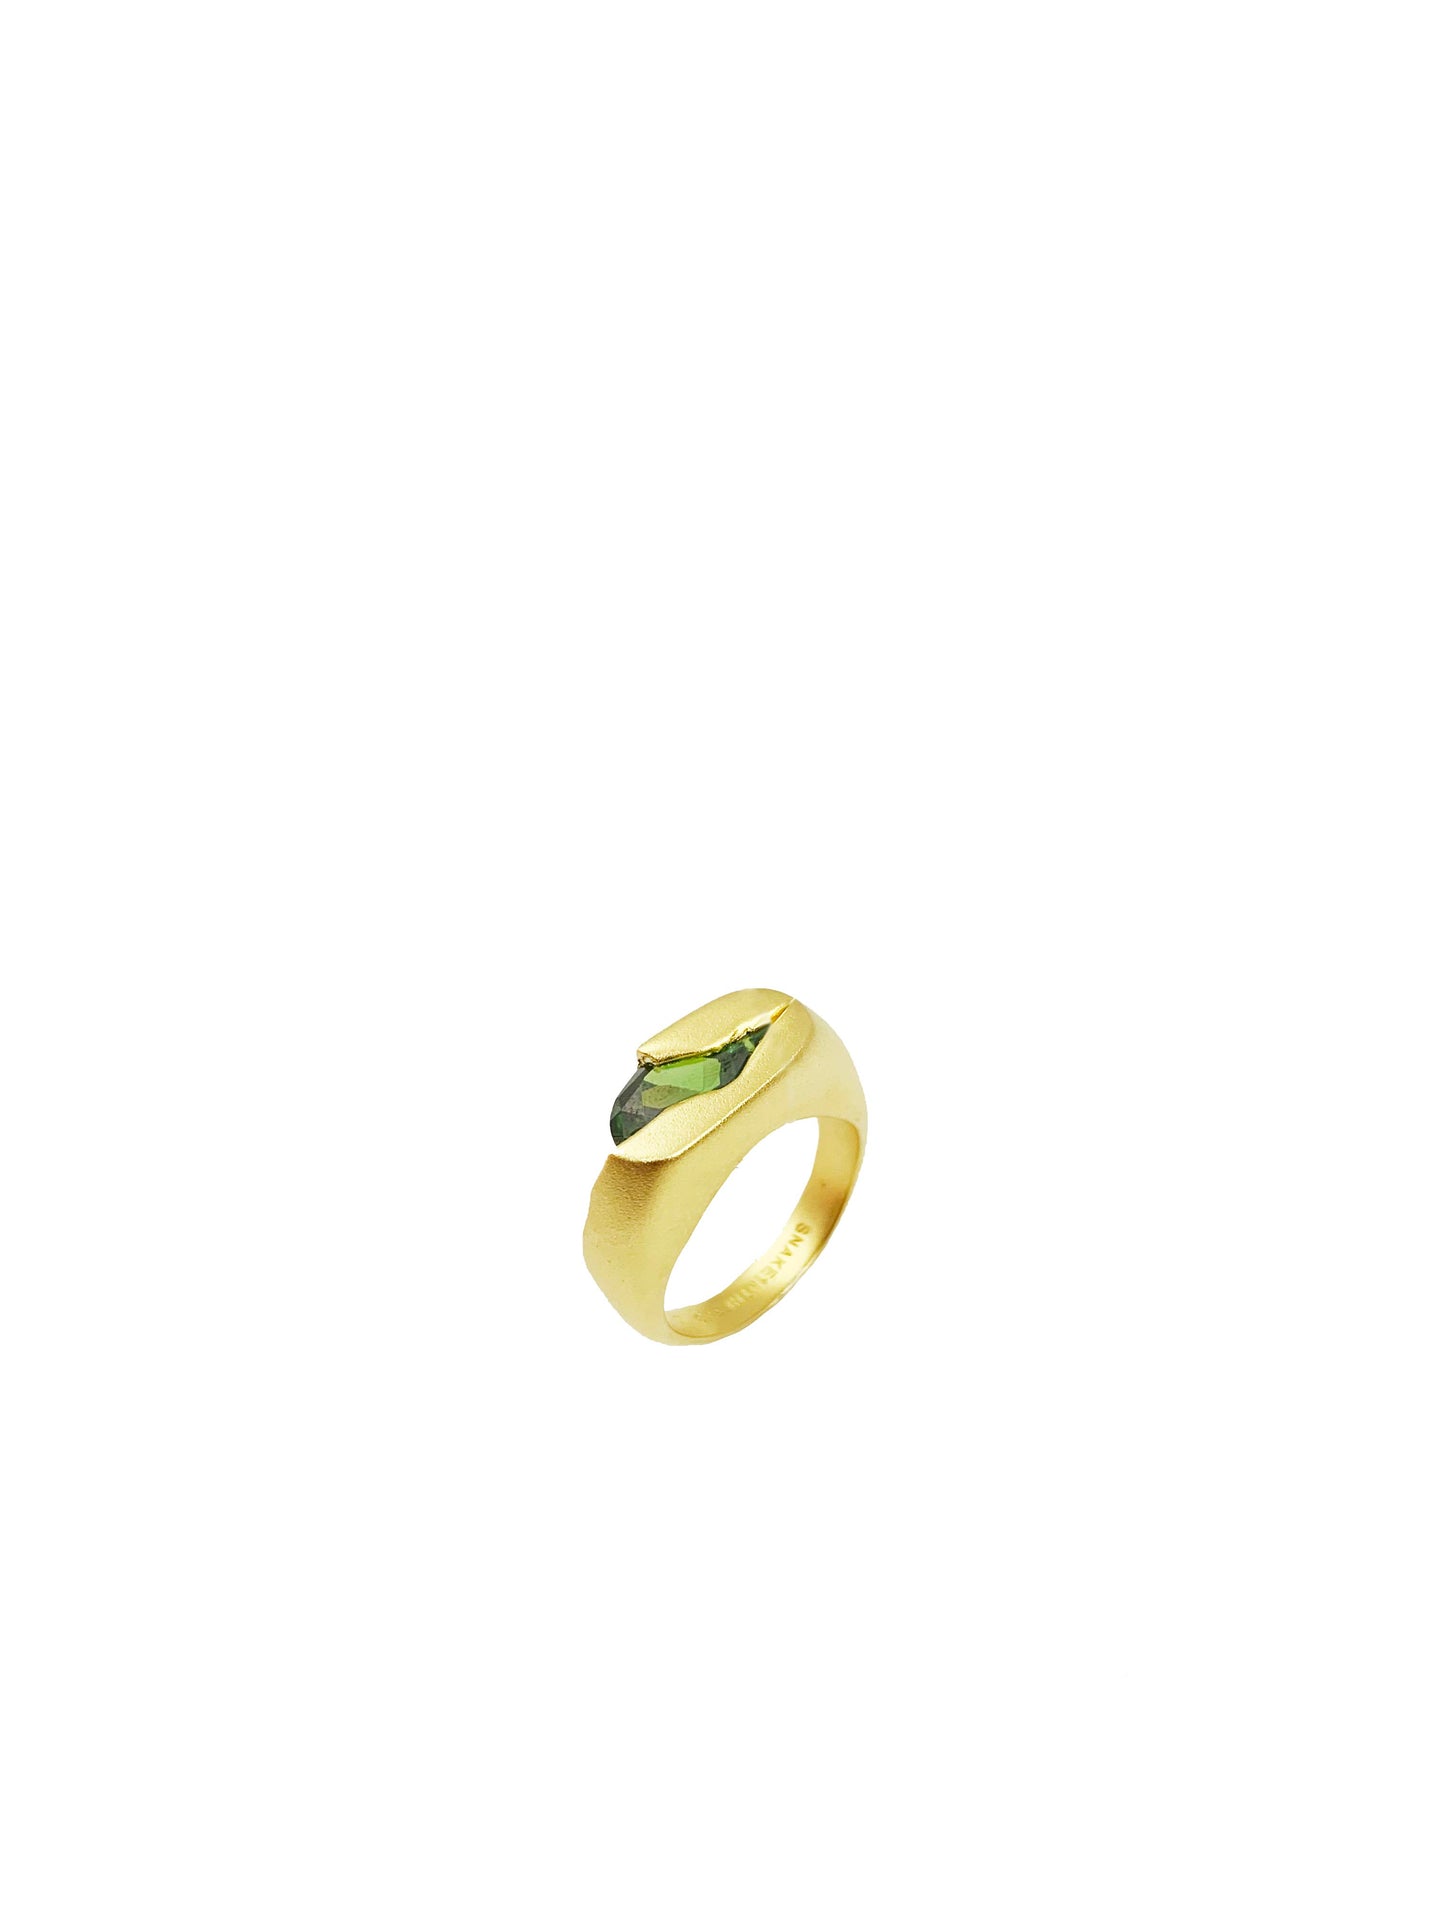 OLIVER STONE IN BROKEN BRICK - 14k gold pinky ring